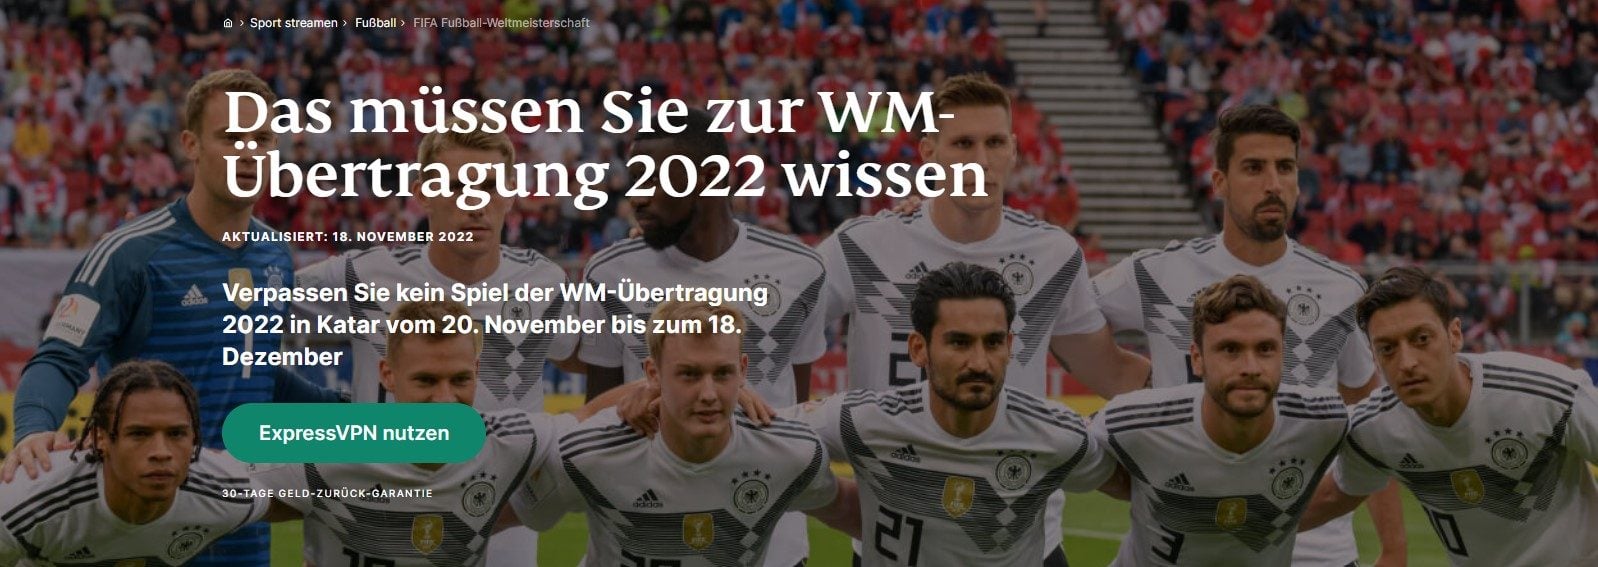 Deutschland gegen Japan live im Ausland ansehen WM-Spiele streamen